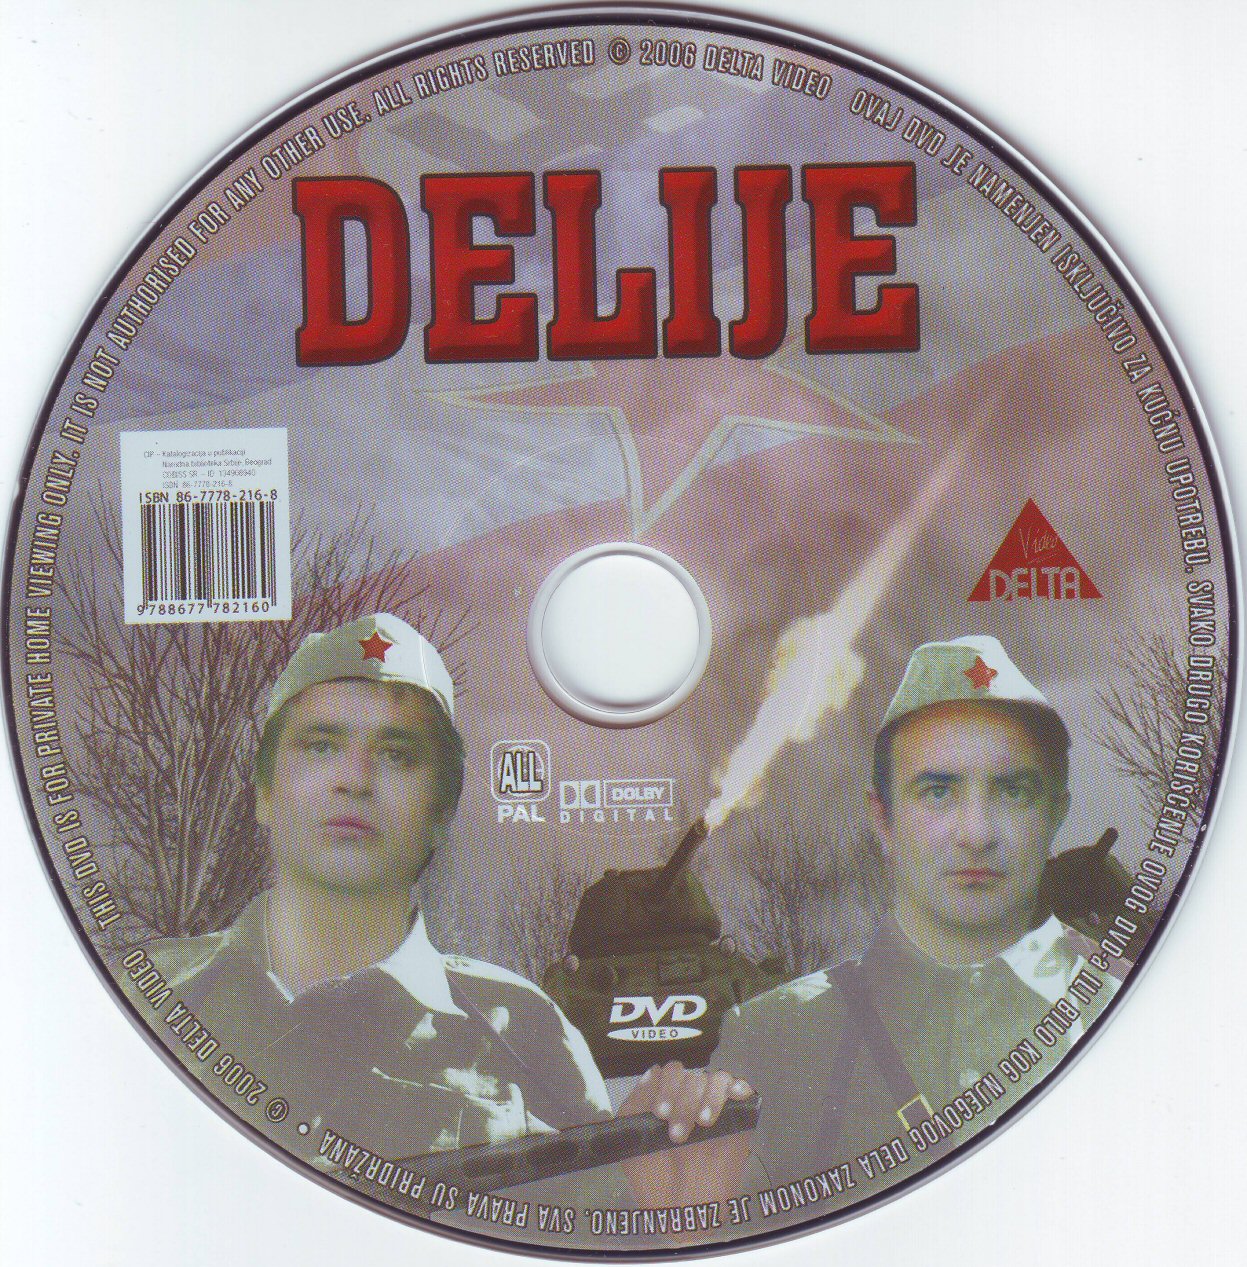 Click to view full size image -  DVD Cover - D - DVD - DELIJE - CD - DVD - DELIJE - CD.jpg